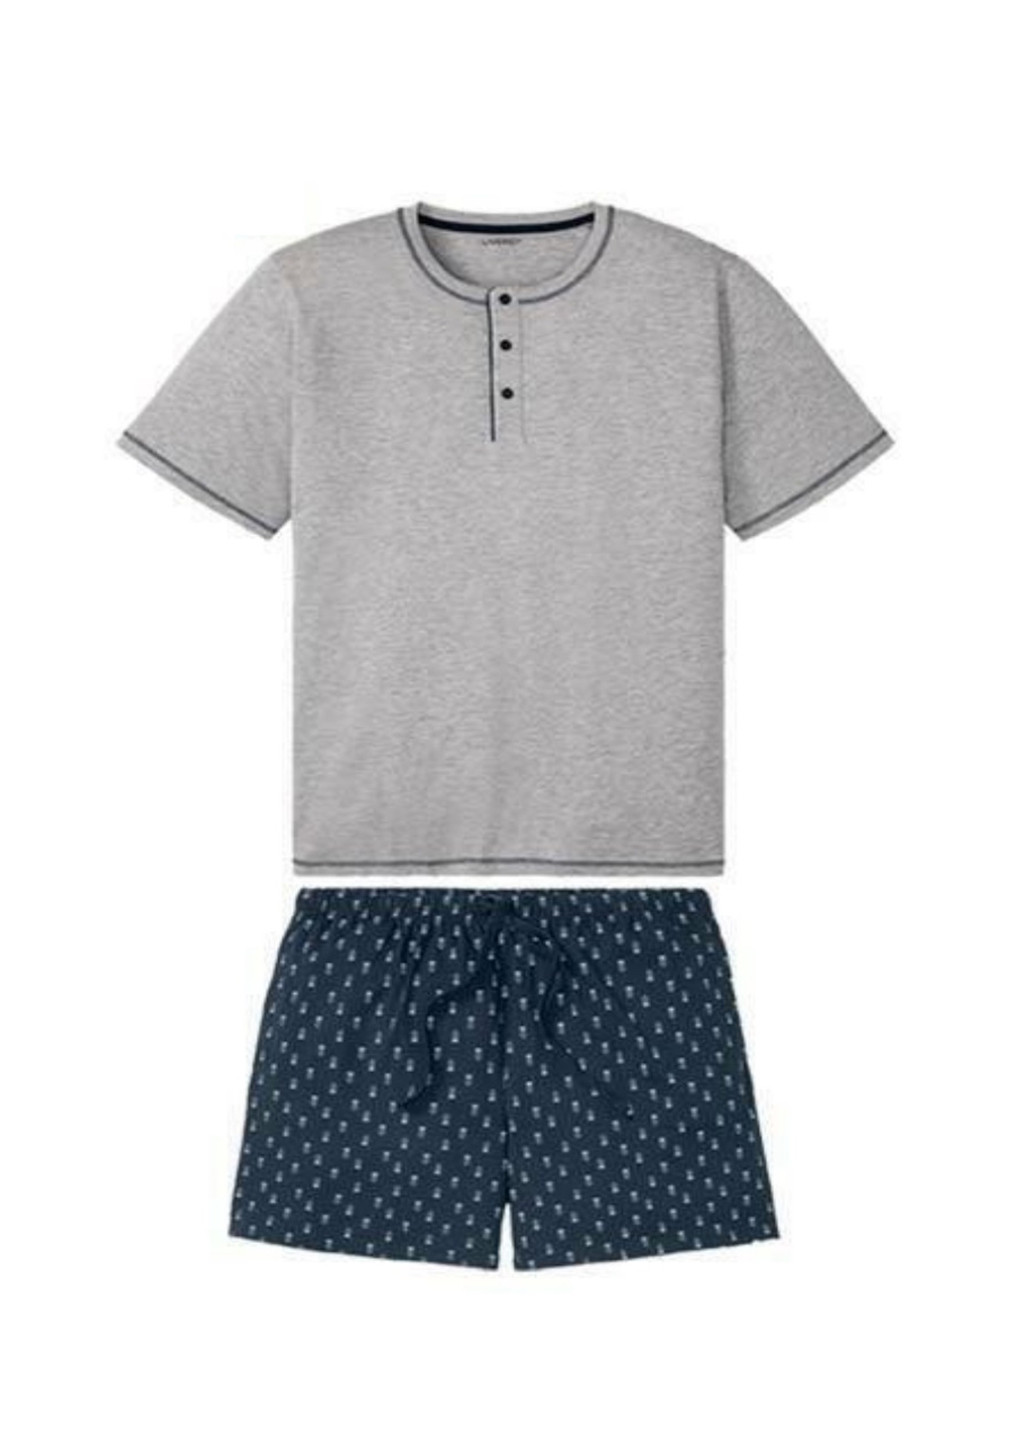 Піжама (футболка, шорти) Livergy футболка + шорти меланж світло-сіра домашня трикотаж, бавовна